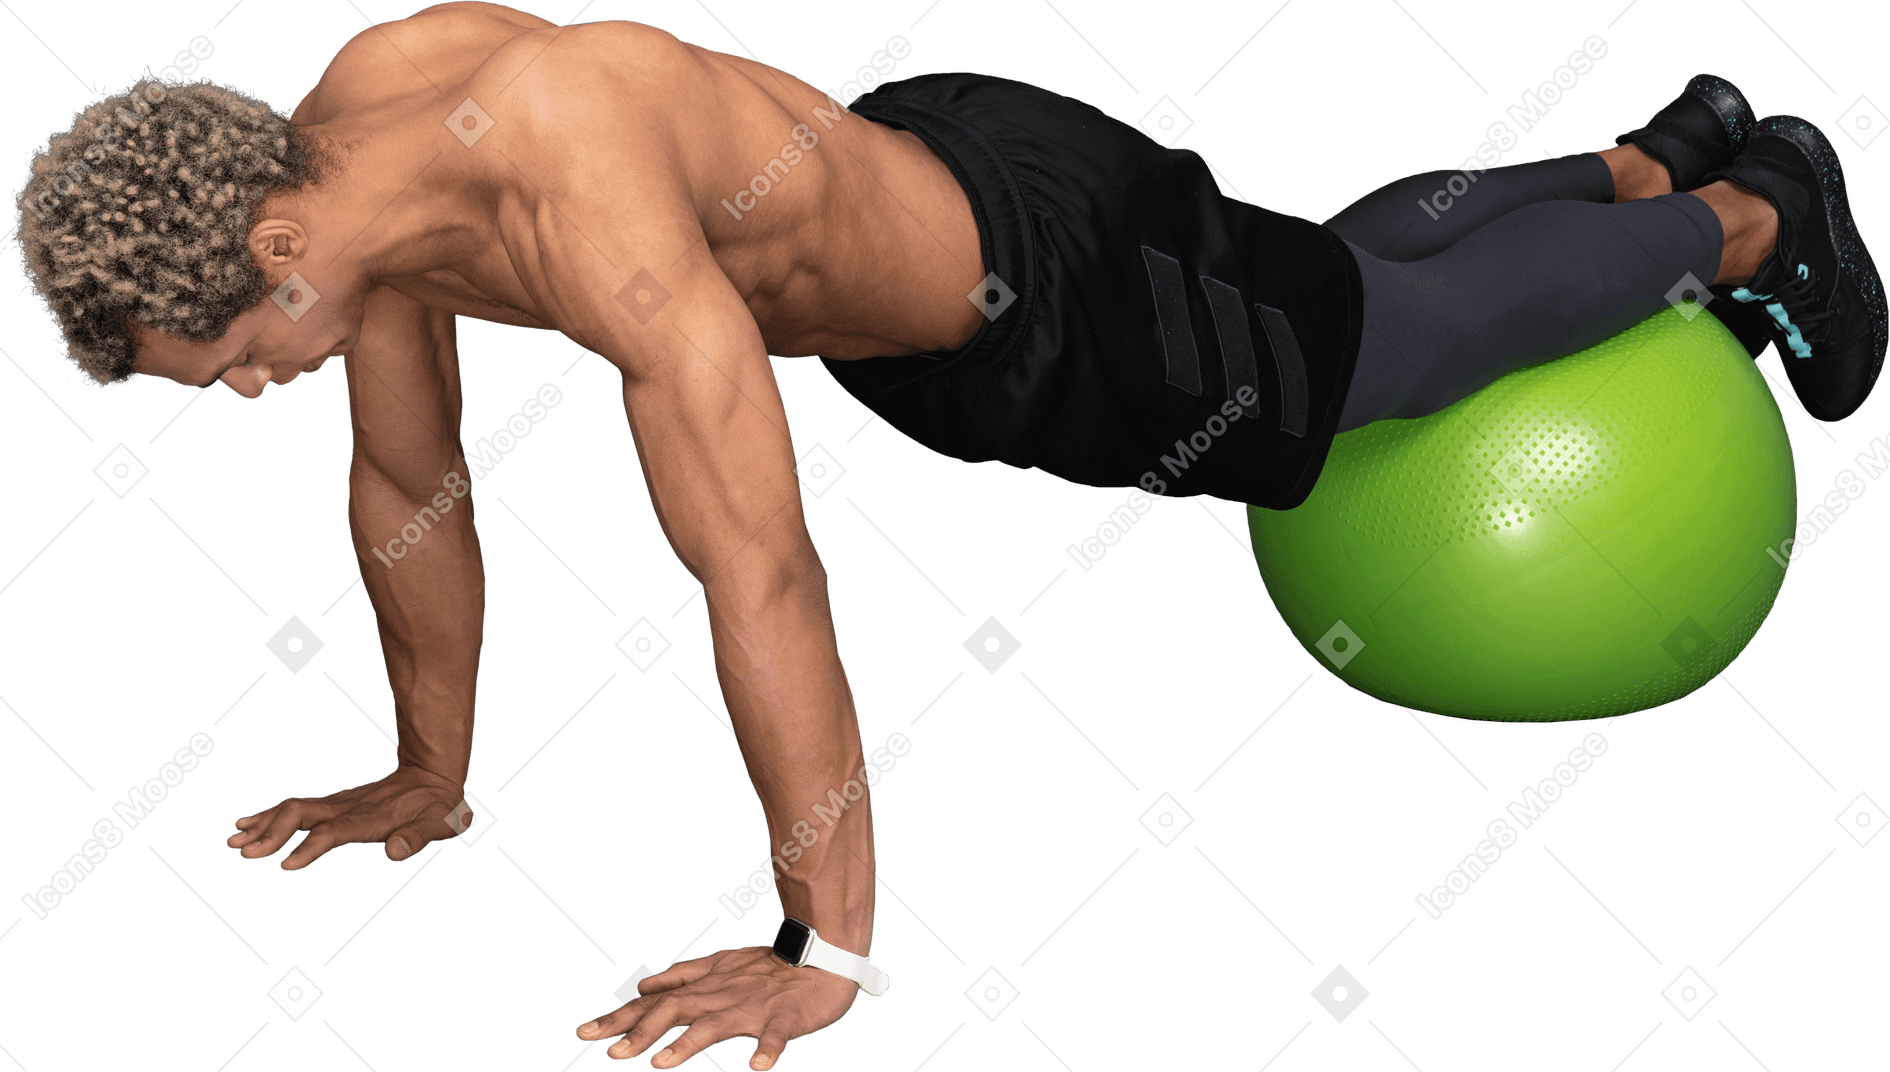 Dreiviertelansicht eines hemdlosen afro-mannes, der liegestütze auf einem gymnastikball macht